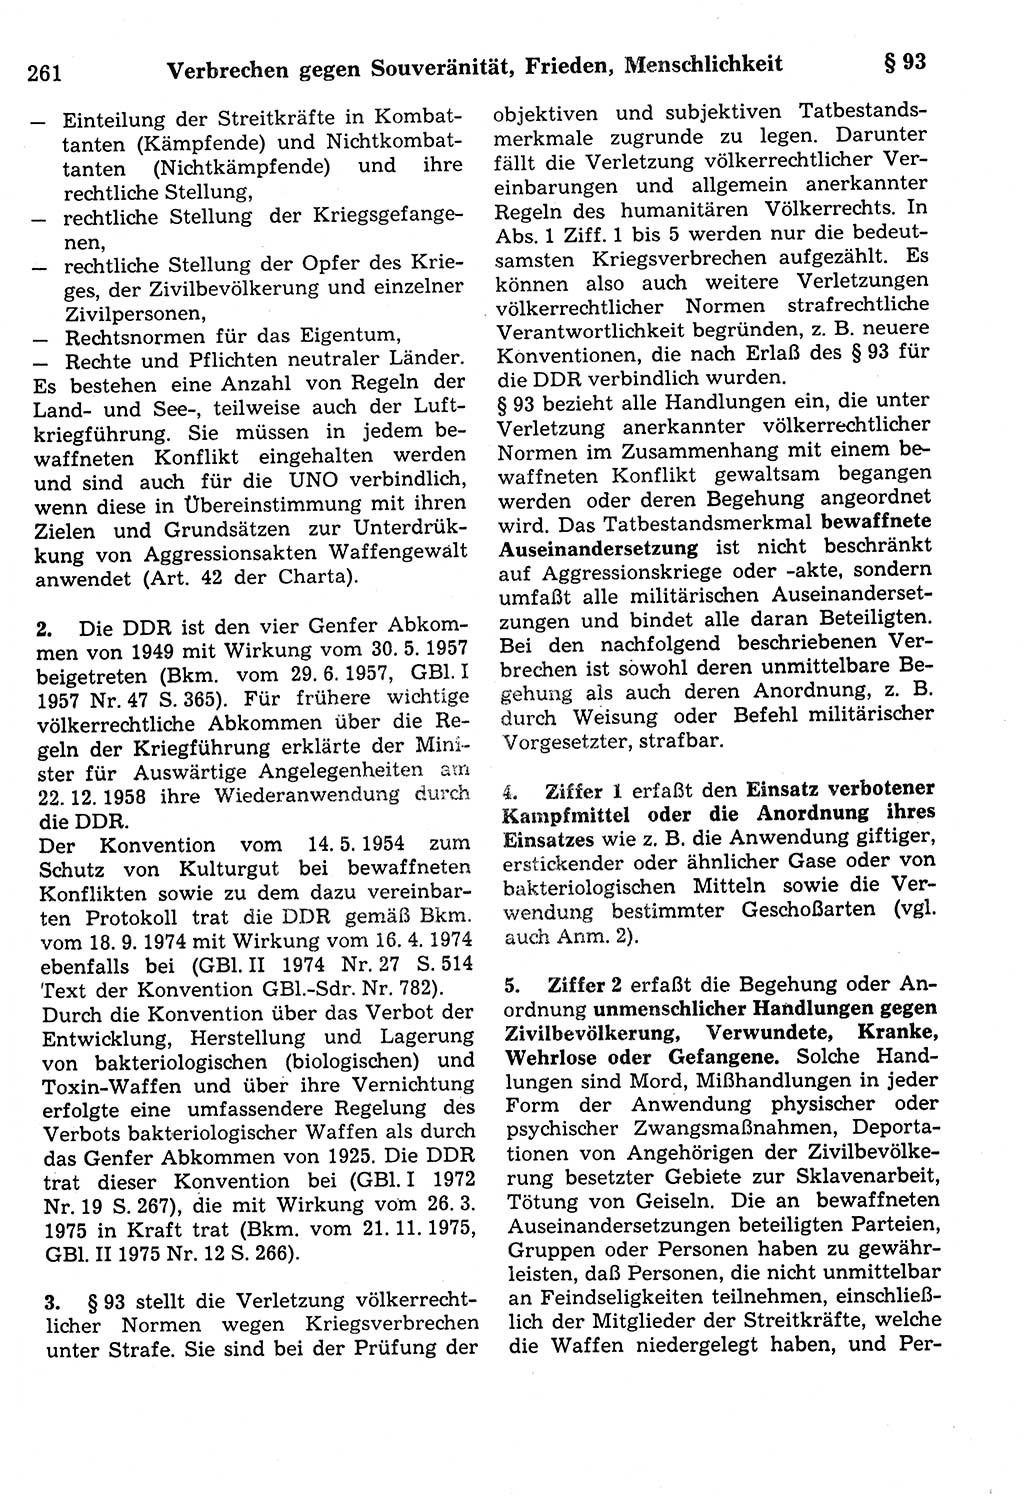 Strafrecht der Deutschen Demokratischen Republik (DDR), Kommentar zum Strafgesetzbuch (StGB) 1987, Seite 261 (Strafr. DDR Komm. StGB 1987, S. 261)